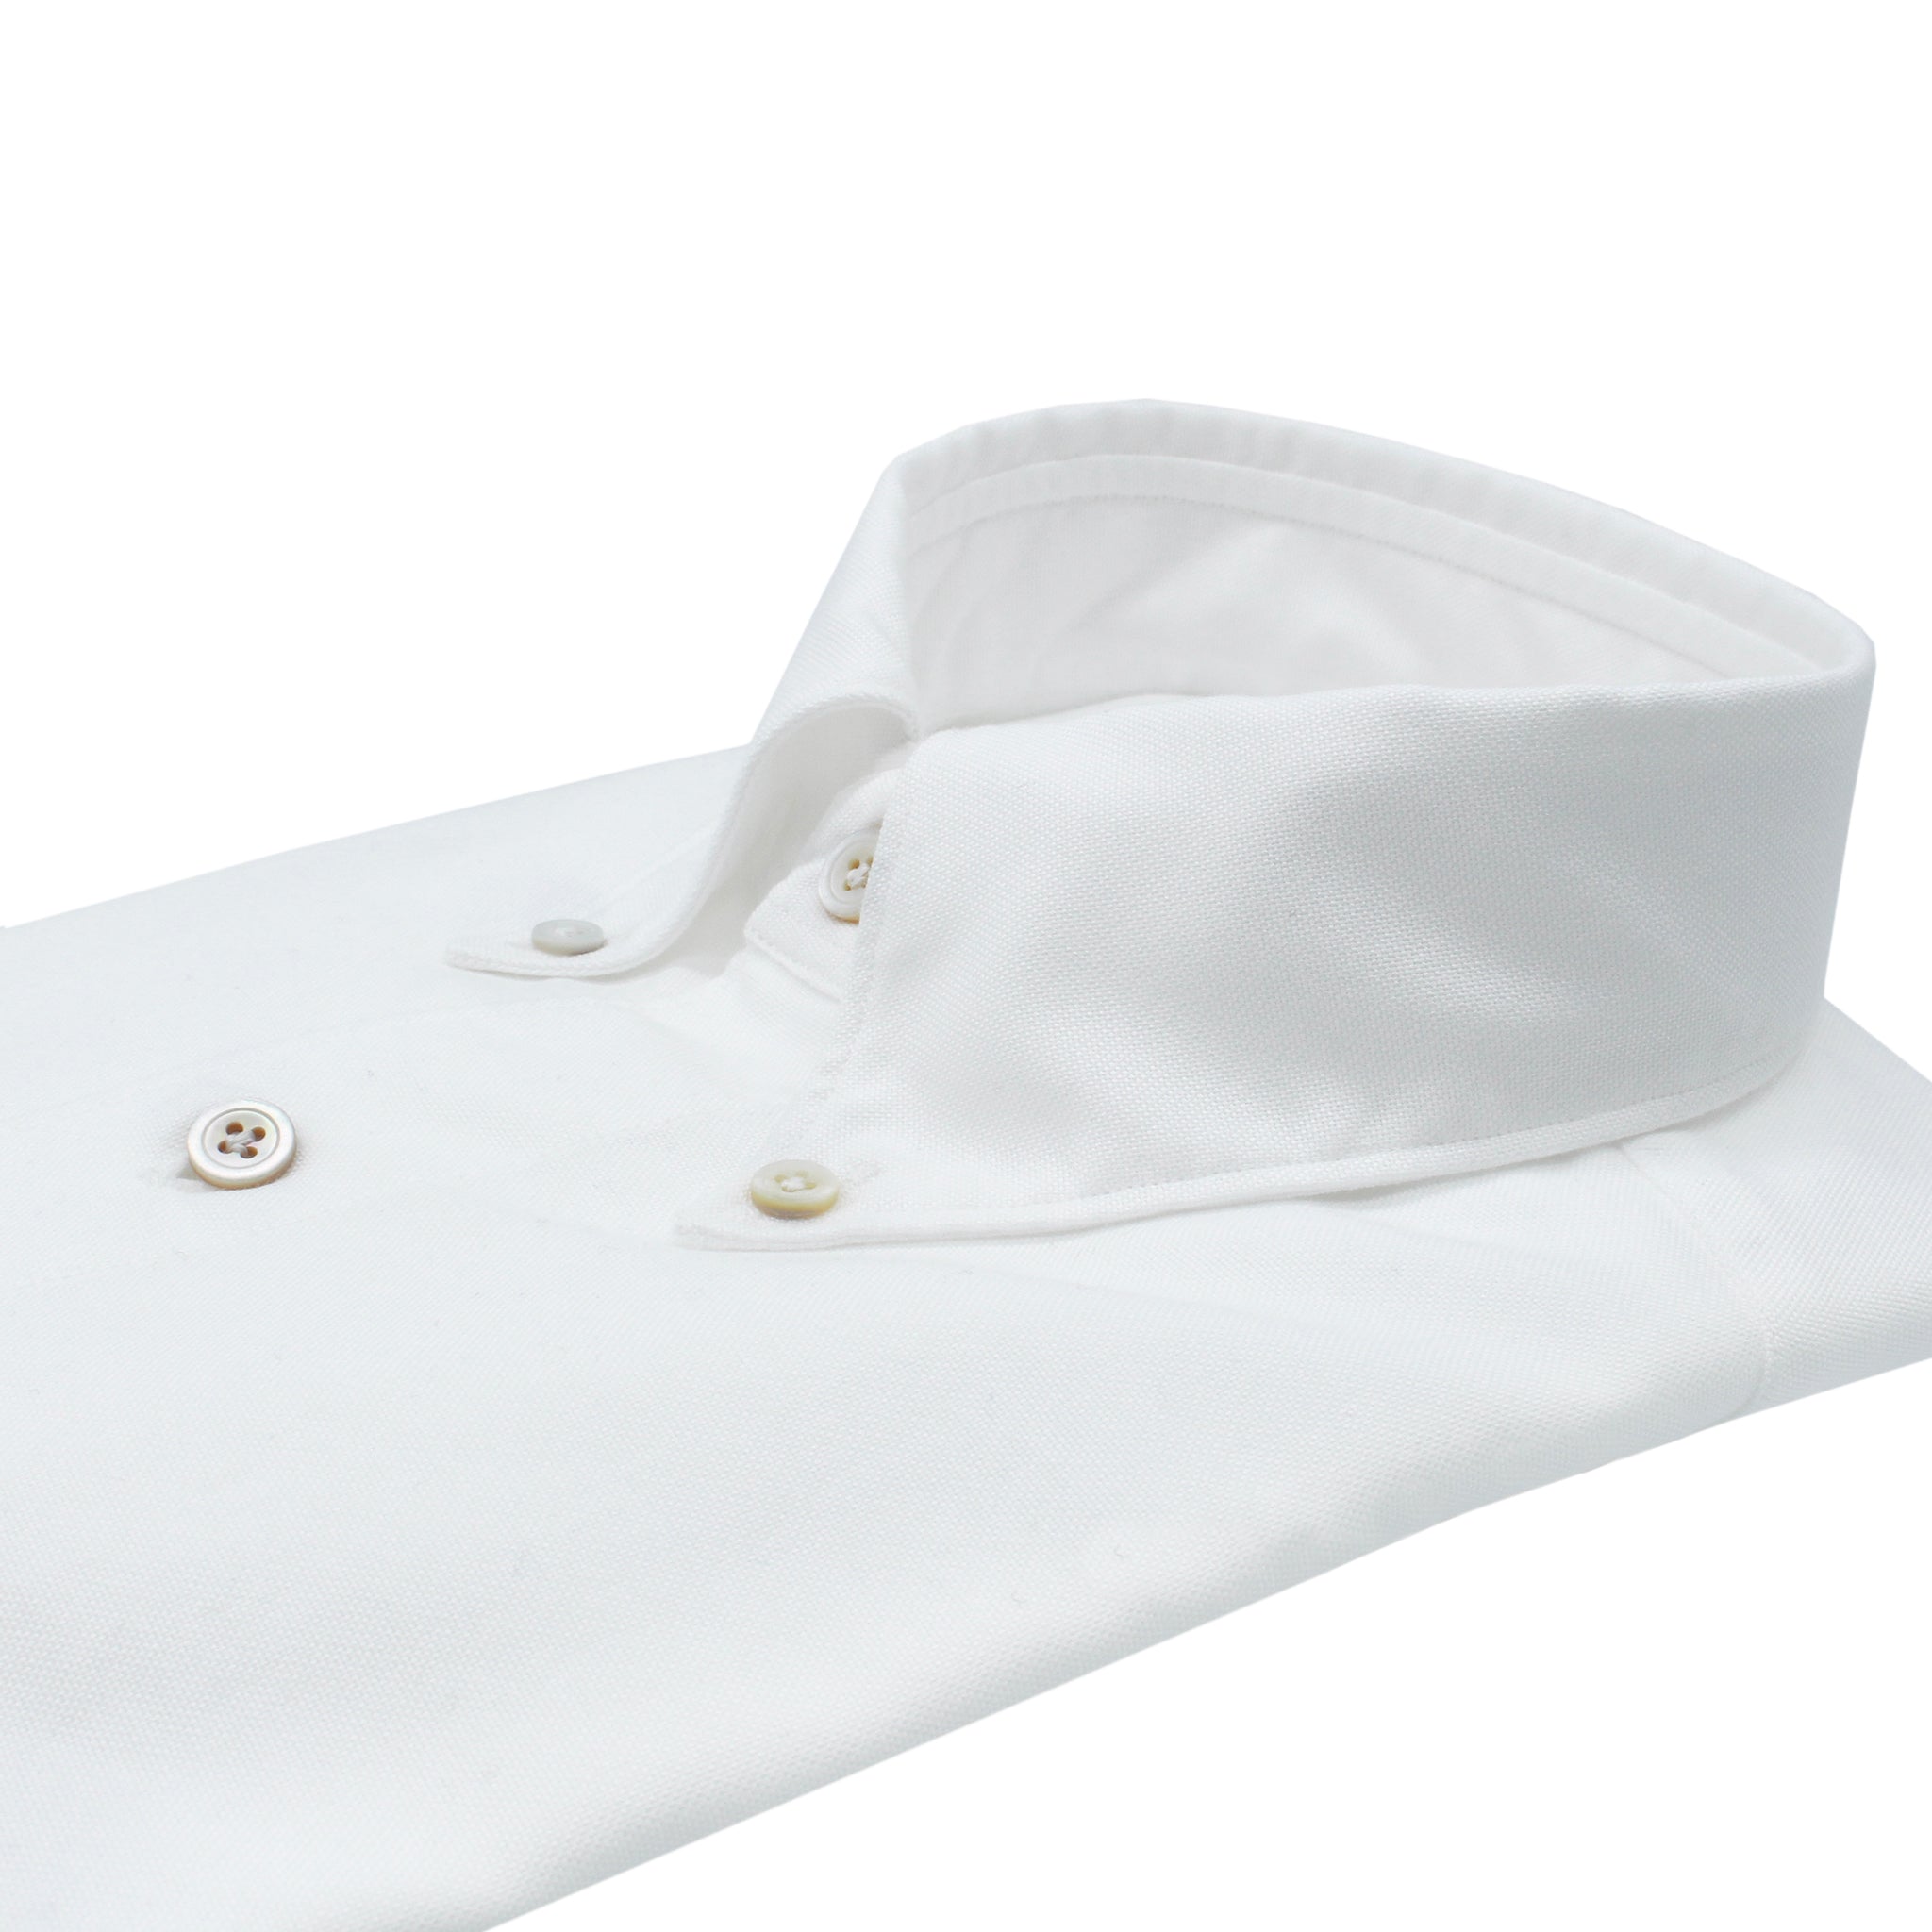 Camicia Tokyo slim fit in chambray bianca con collo button down